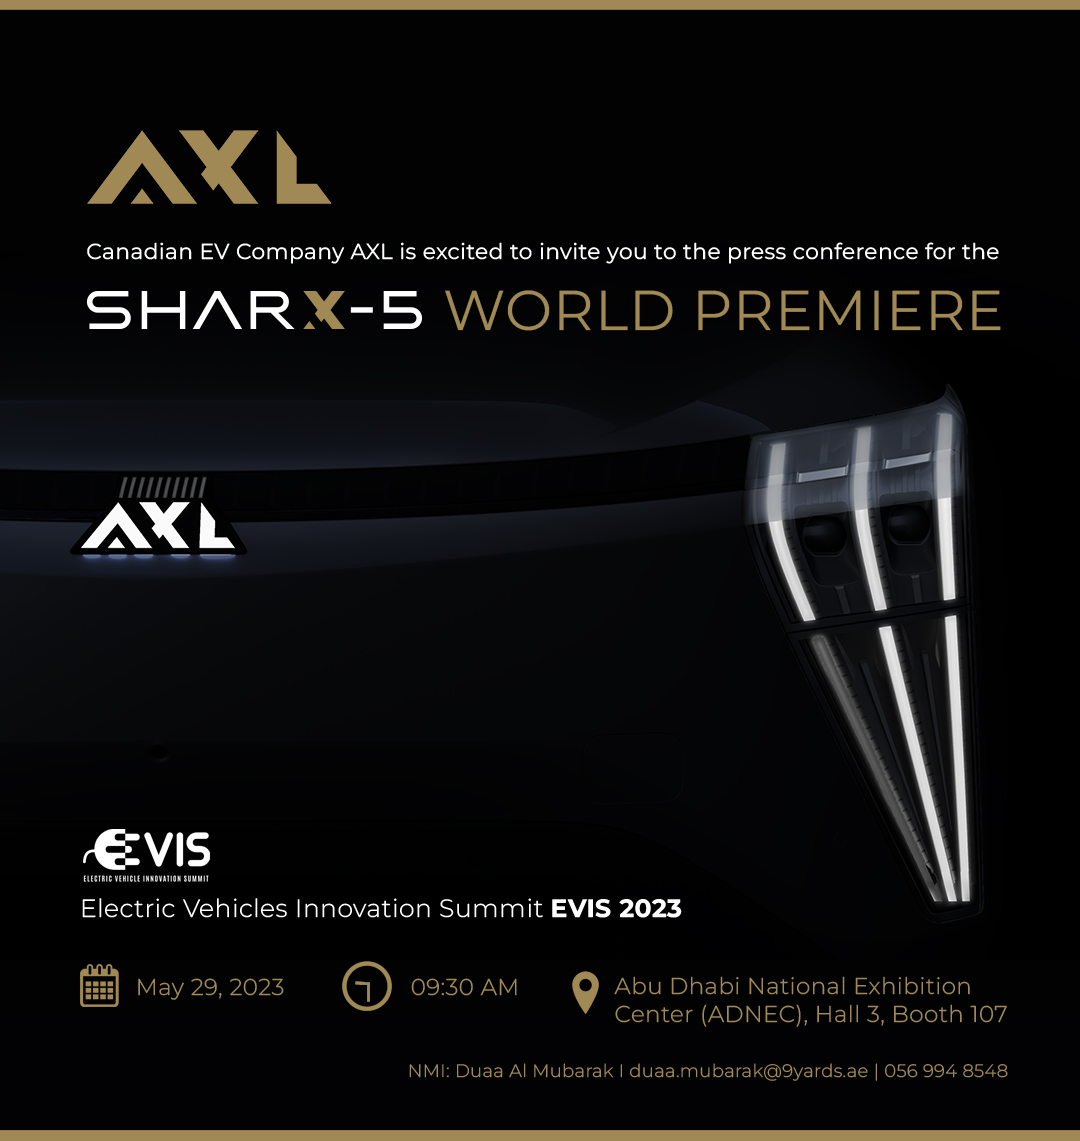 في أول ظهور لها في منطقة الشرق الأوسط وشمال إفريقيا ، تكشف AXL للسيارات الكهربائية الكندية عن سيارتها الرياضية متعددة الاستخدامات Sharx-5 في قمة EVIS